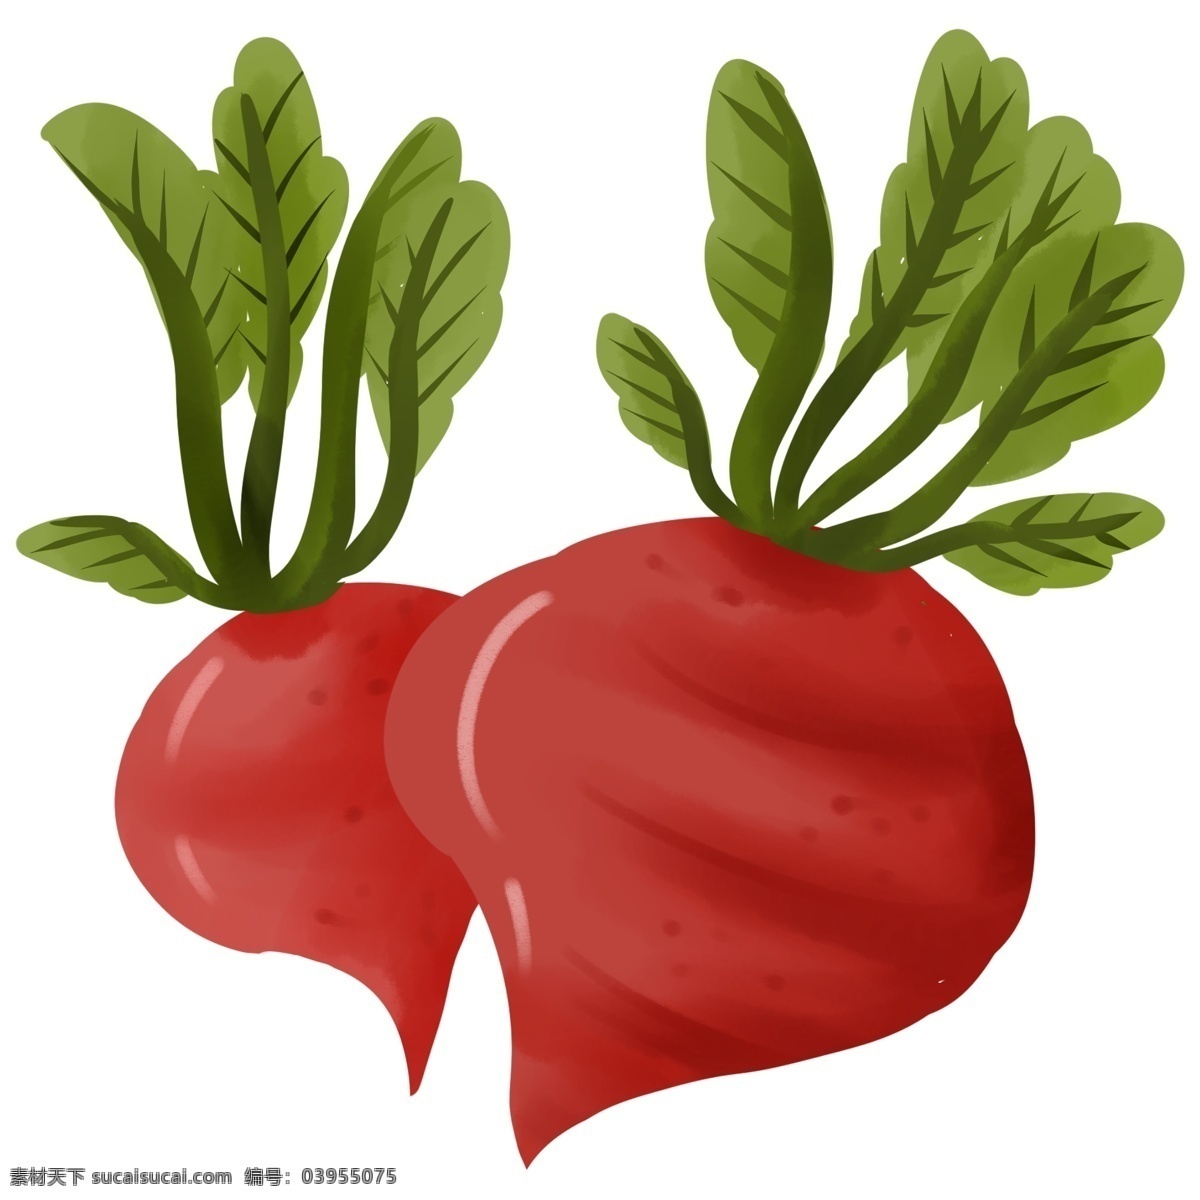 萝卜 植物 叶子 绿色食品 健康 食物 红色 白色 黄色 大自然 卡通 装饰 装饰画 自然 生长 生命 清新 蔬菜